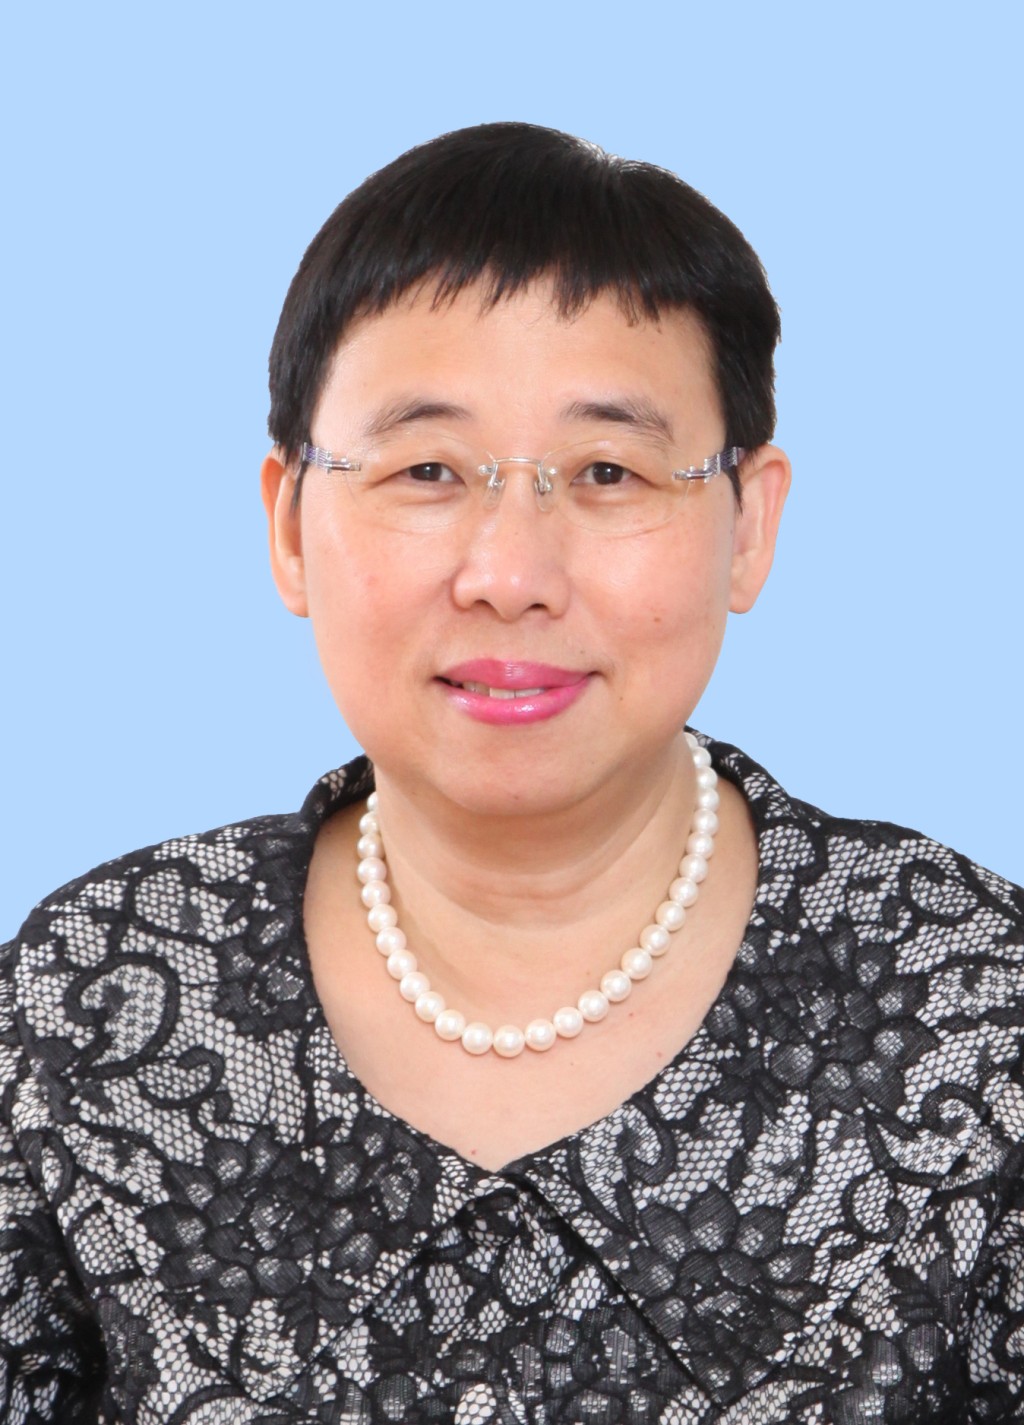 商務及經濟發展局常任秘書長利敏貞將於7月開始退休前休假。